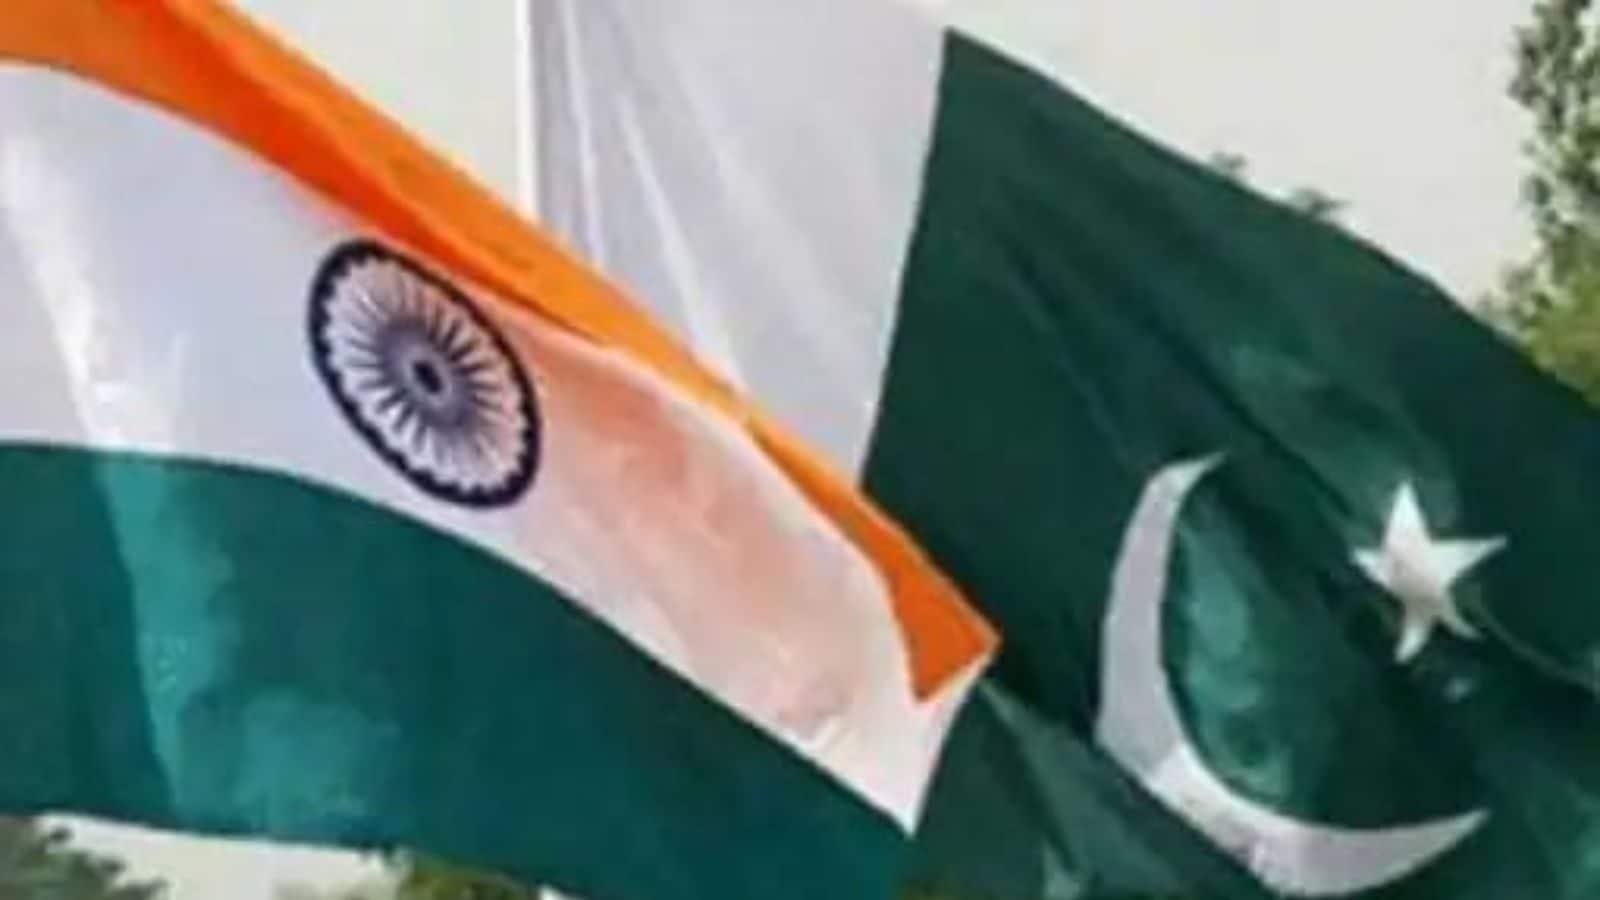 सरकार ने ‘भारत की राष्ट्रीय सुरक्षा के लिए हानिकारक’ सीरीज दिखाने के लिए पाकिस्तान स्थित ओटीटी प्लेटफॉर्म को ब्लॉक किया